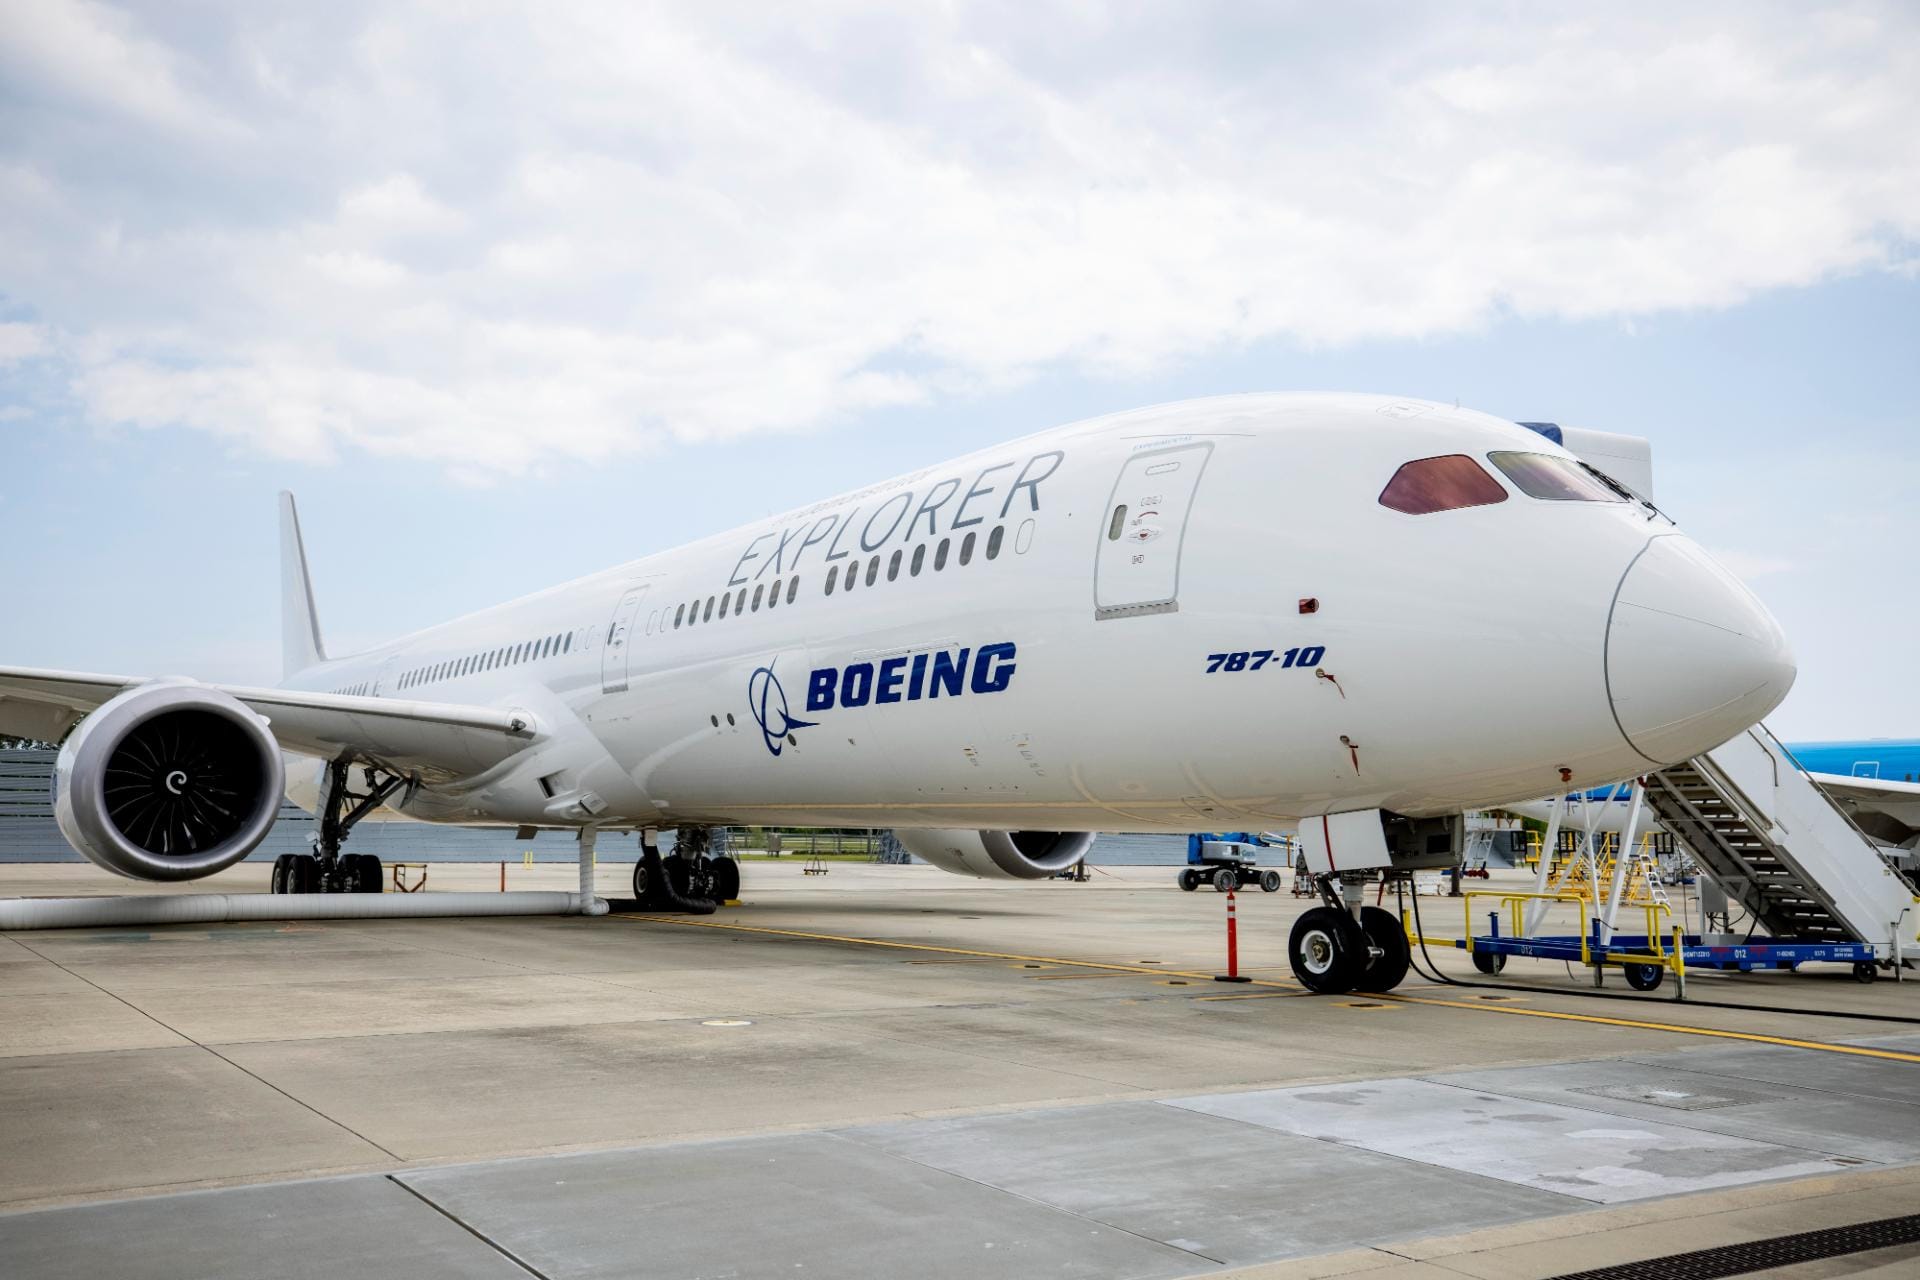 antigo engenheiro da boeing afirma que o 787 dreamliner tem falhas. faa está a investigar